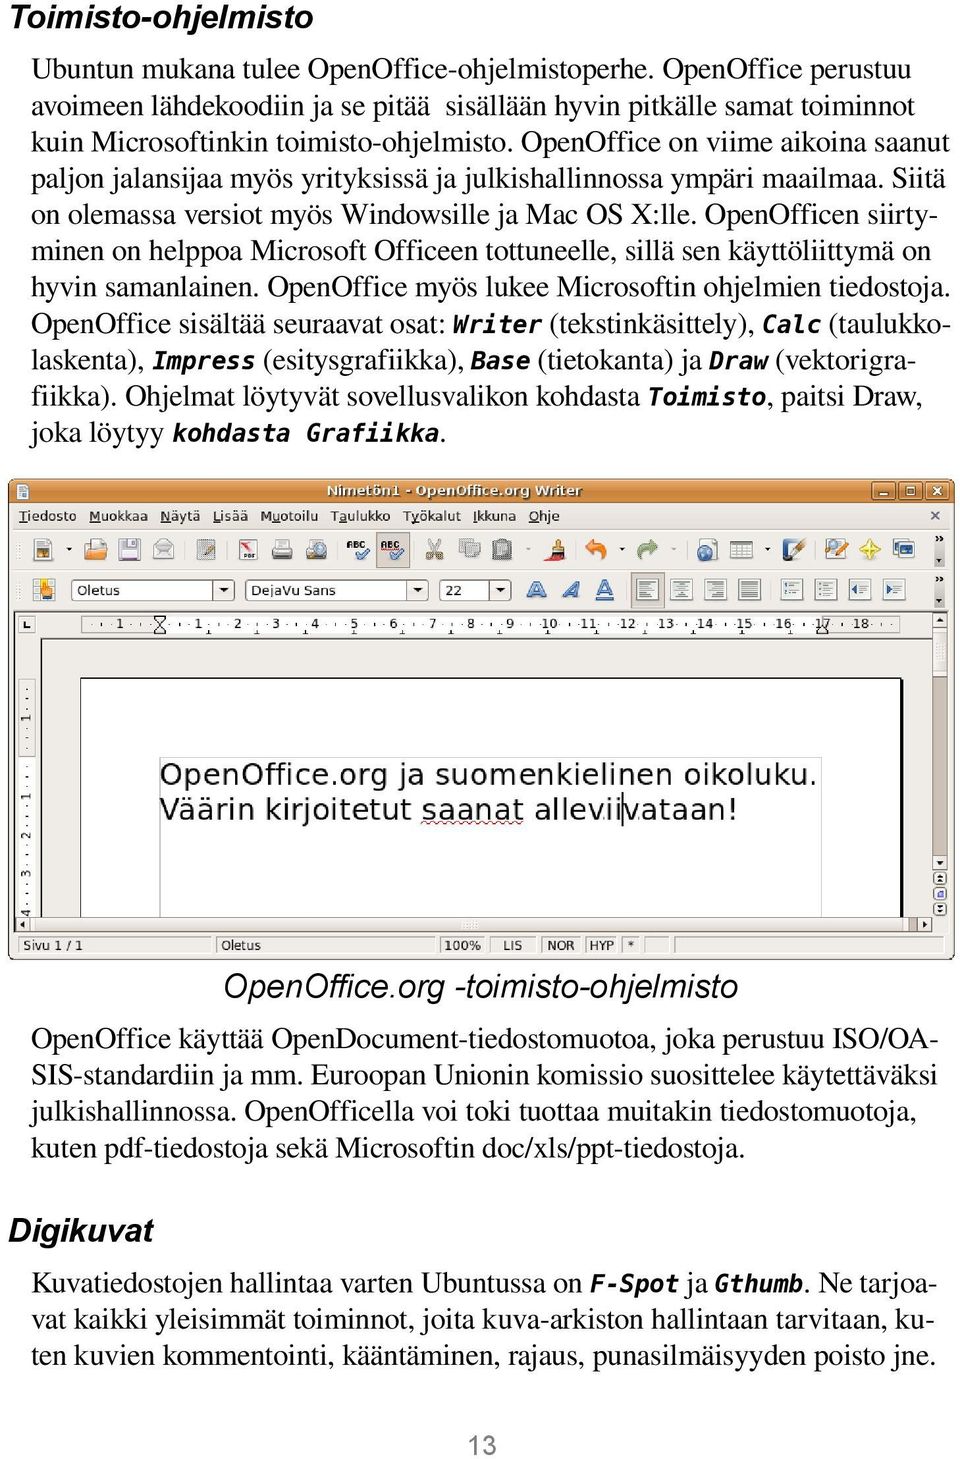 OpenOffice on viime aikoina saanut paljon jalansijaa myös yrityksissä ja julkishallinnossa ympäri maailmaa. Siitä on olemassa versiot myös Windowsille ja Mac OS X:lle.